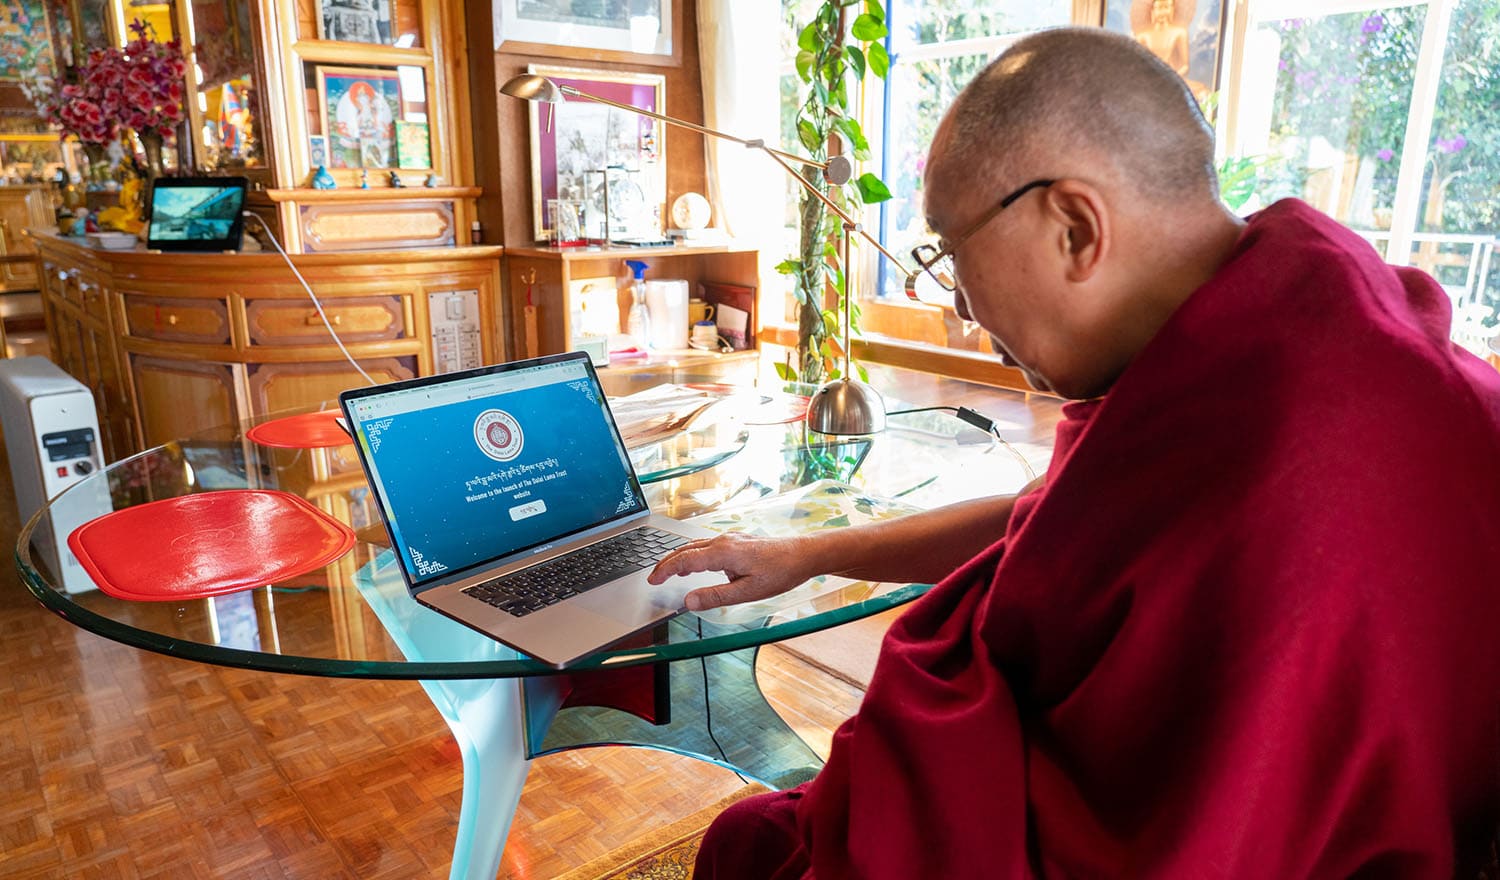 Dalai Lama Trust Website launch photo